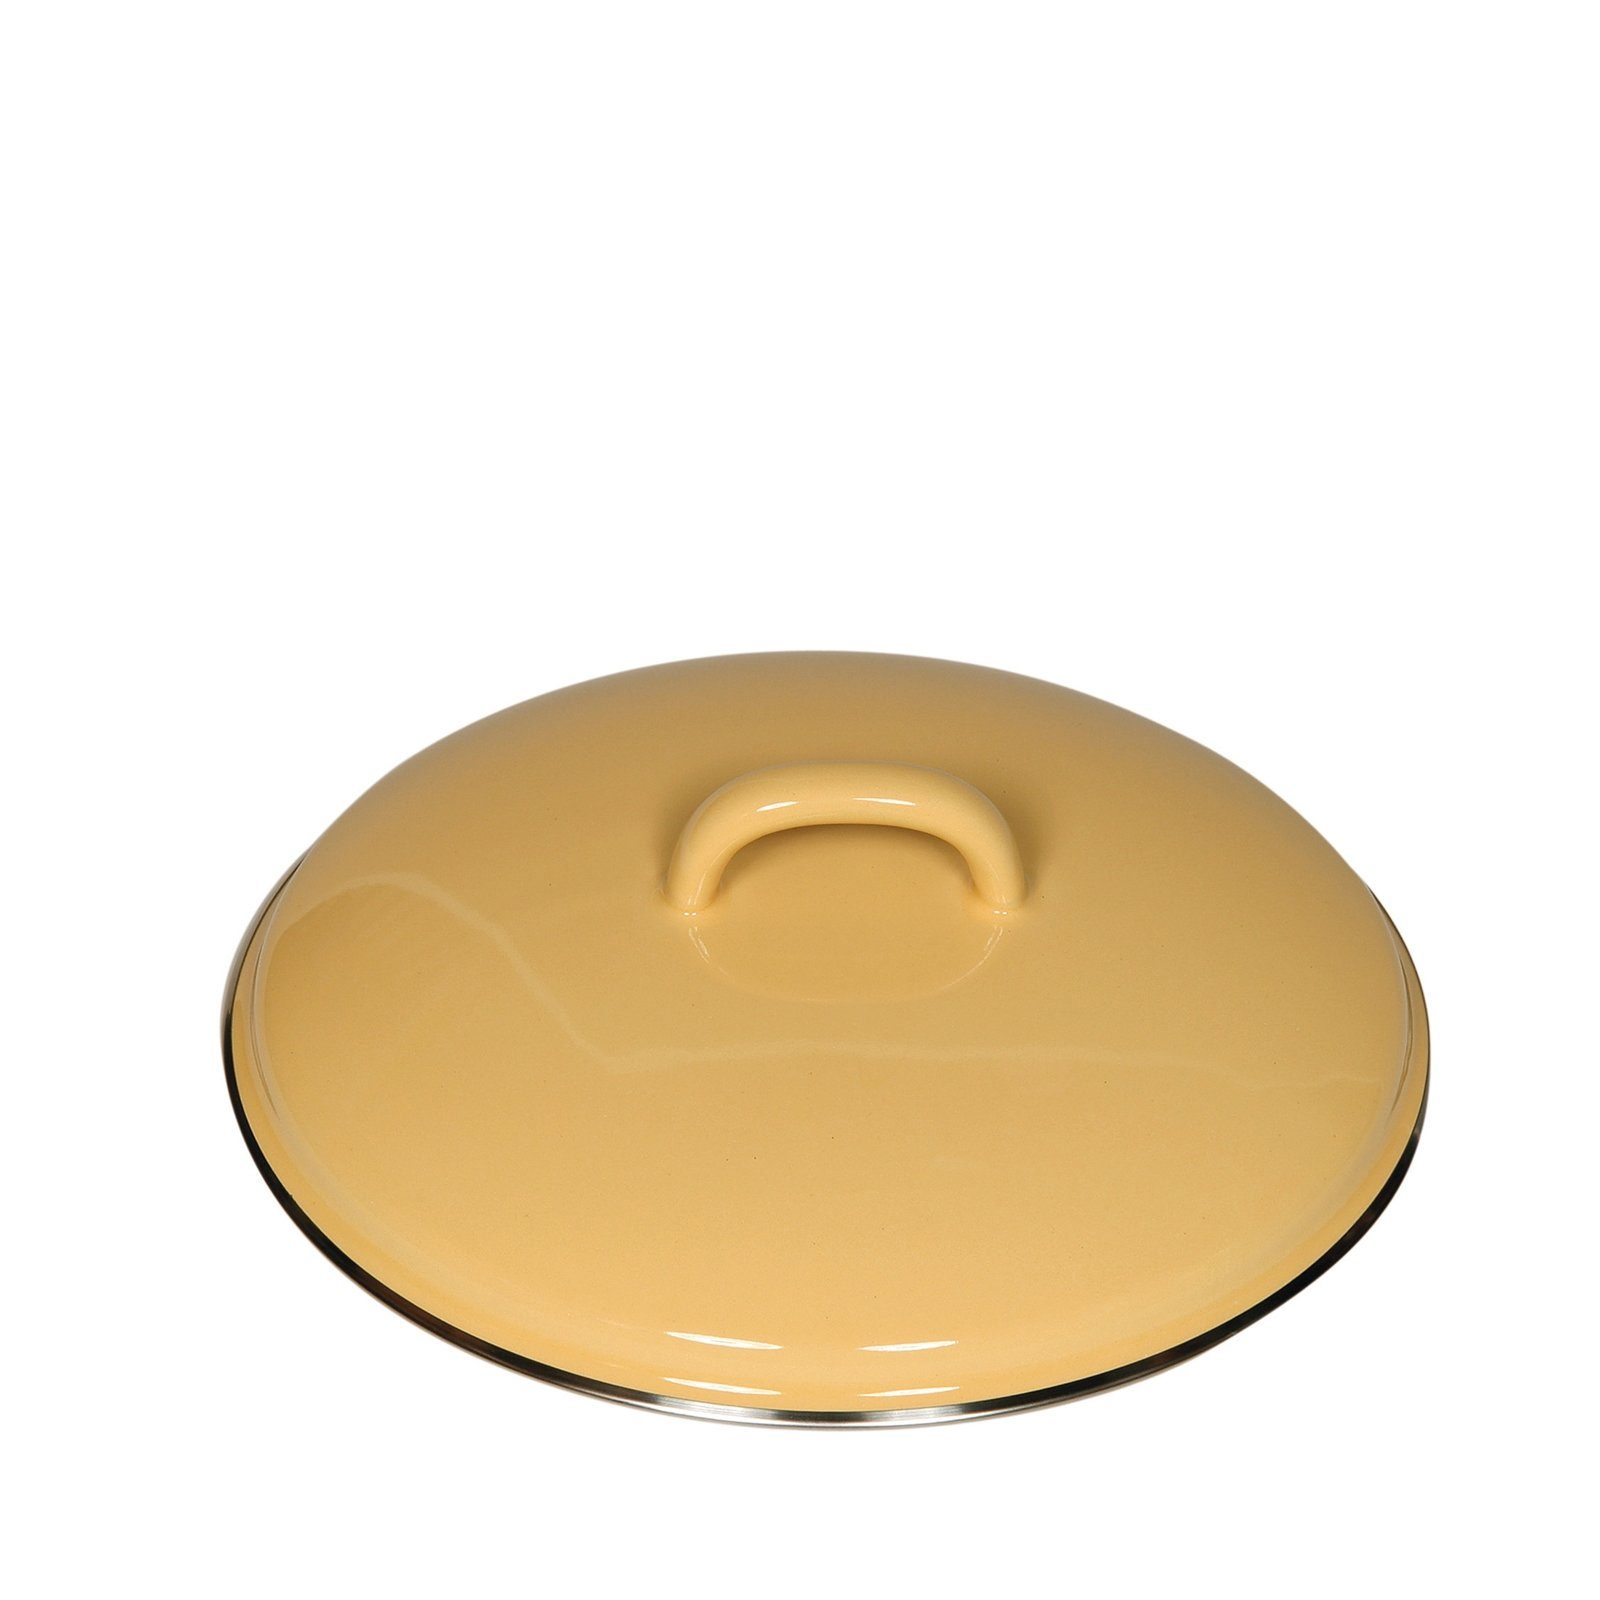 Riess Topfdeckel Deckel 20 cm Classic Color, Empfohlen bei Nickelallergie goldgelb